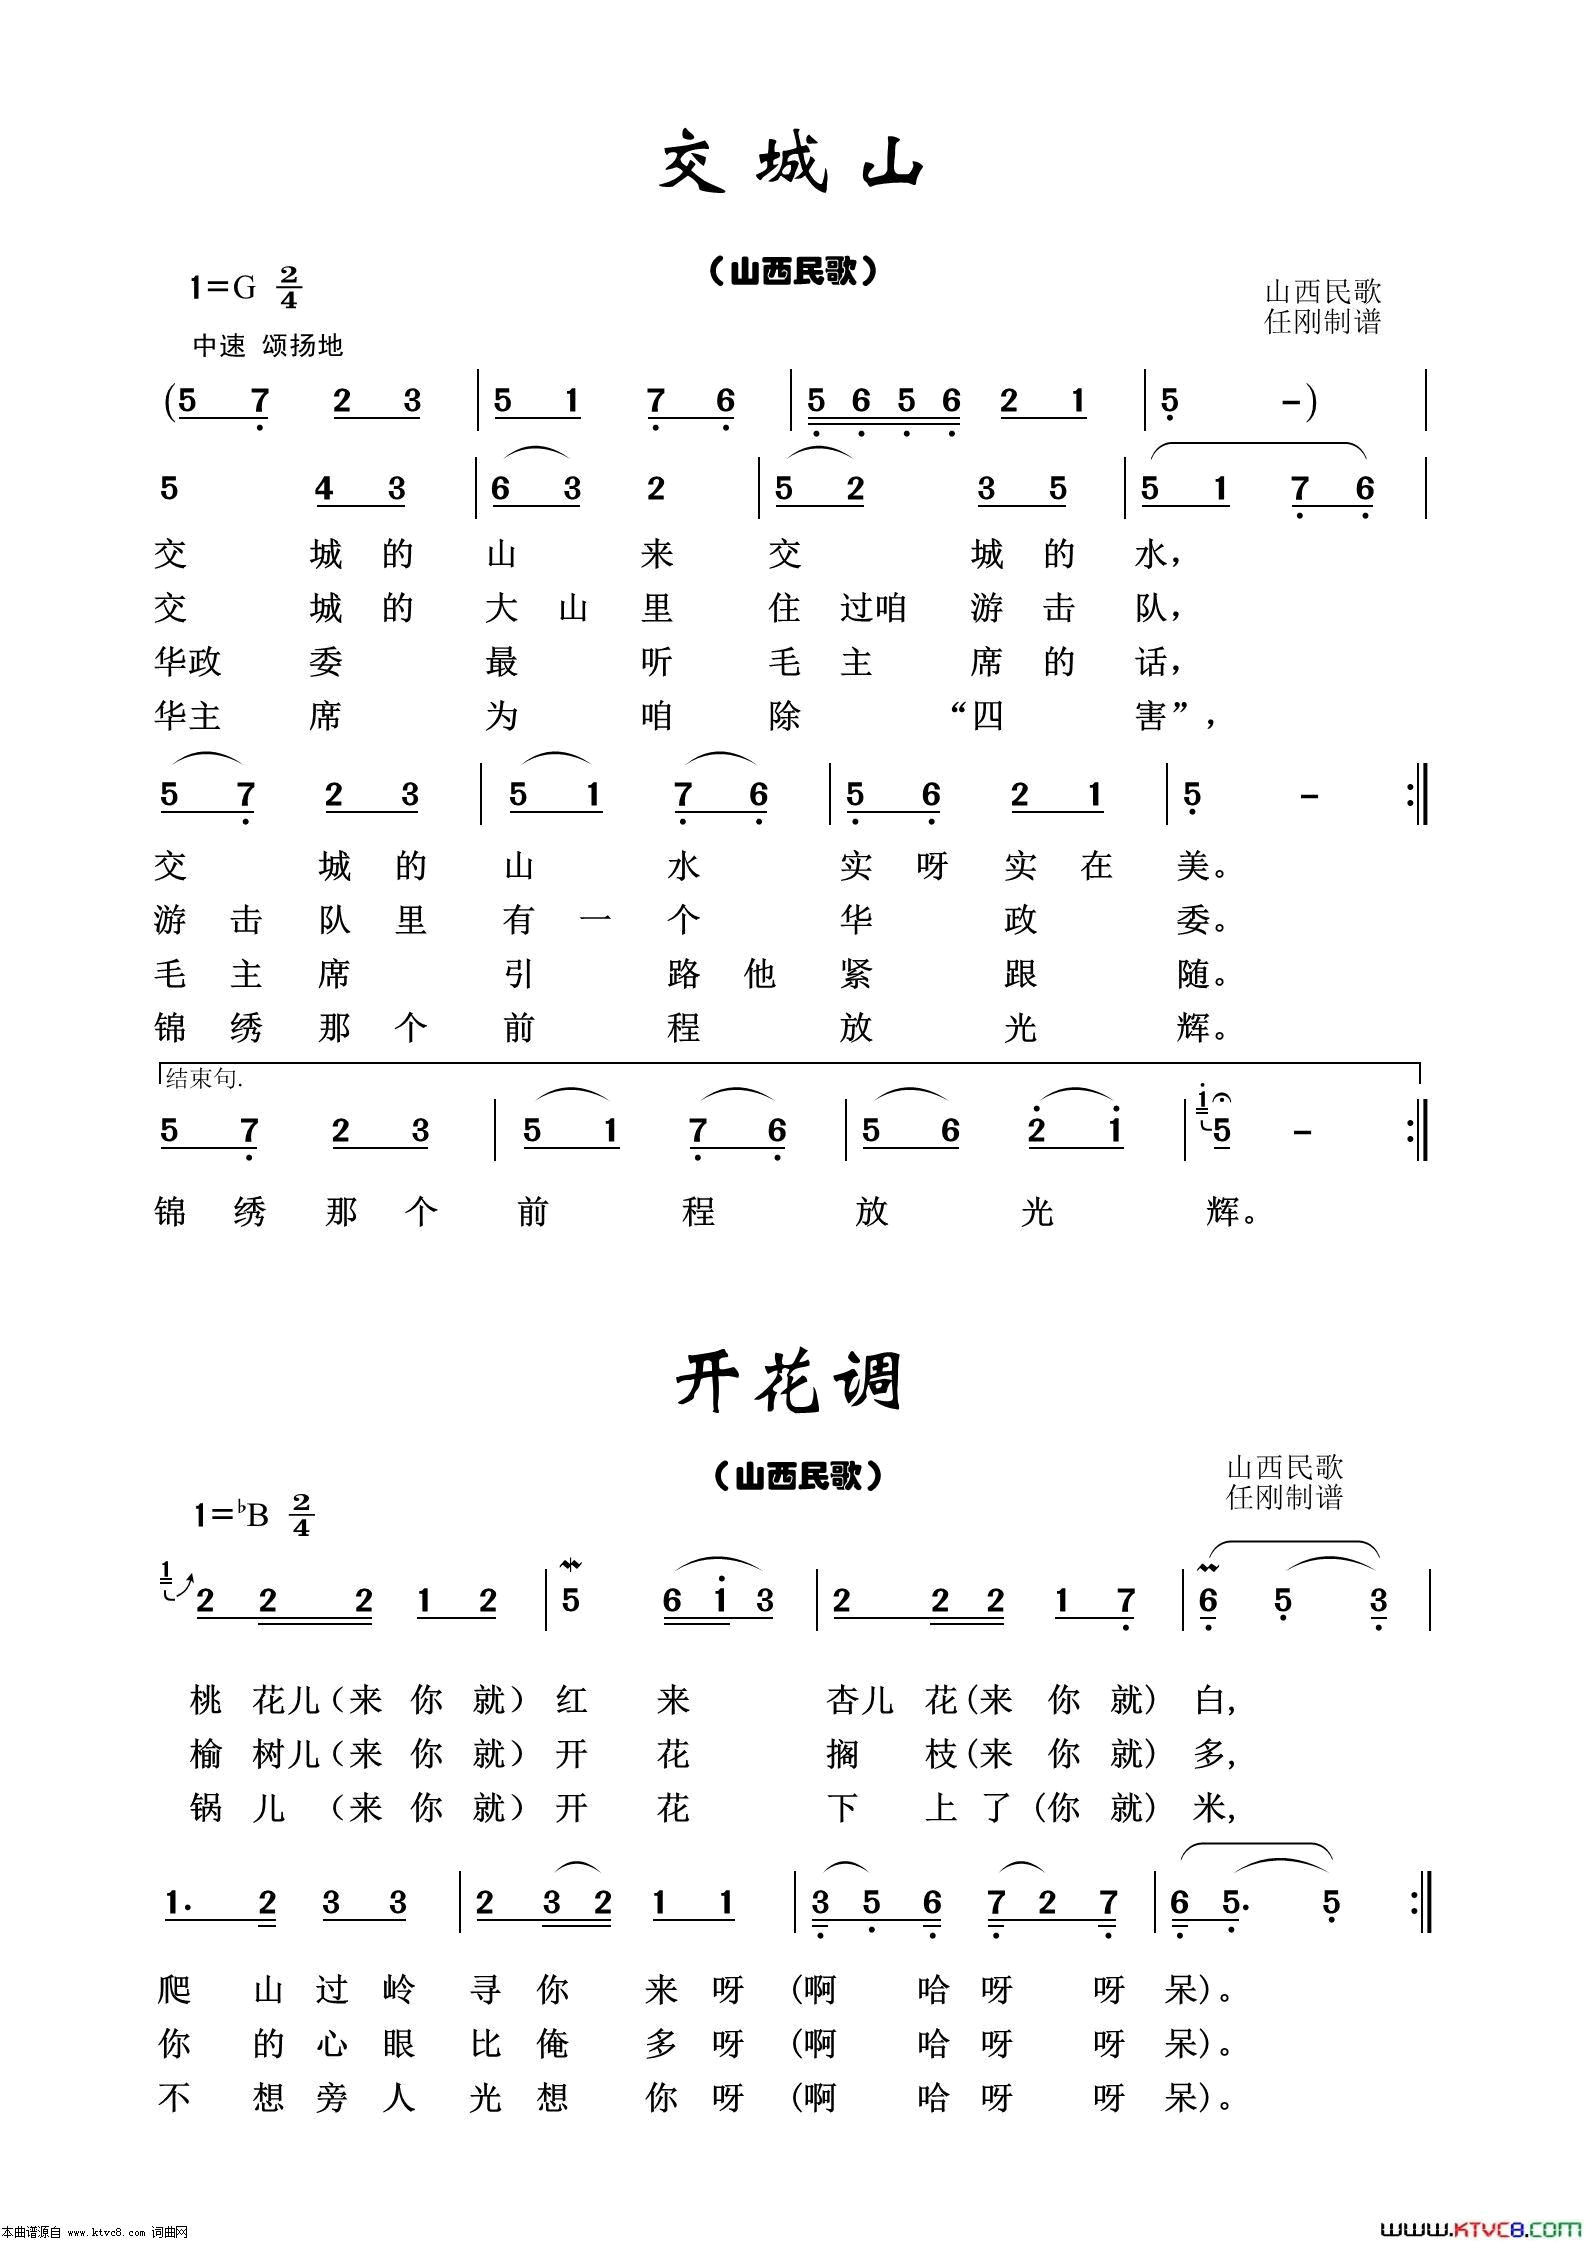 交城山经典民歌100首简谱-1